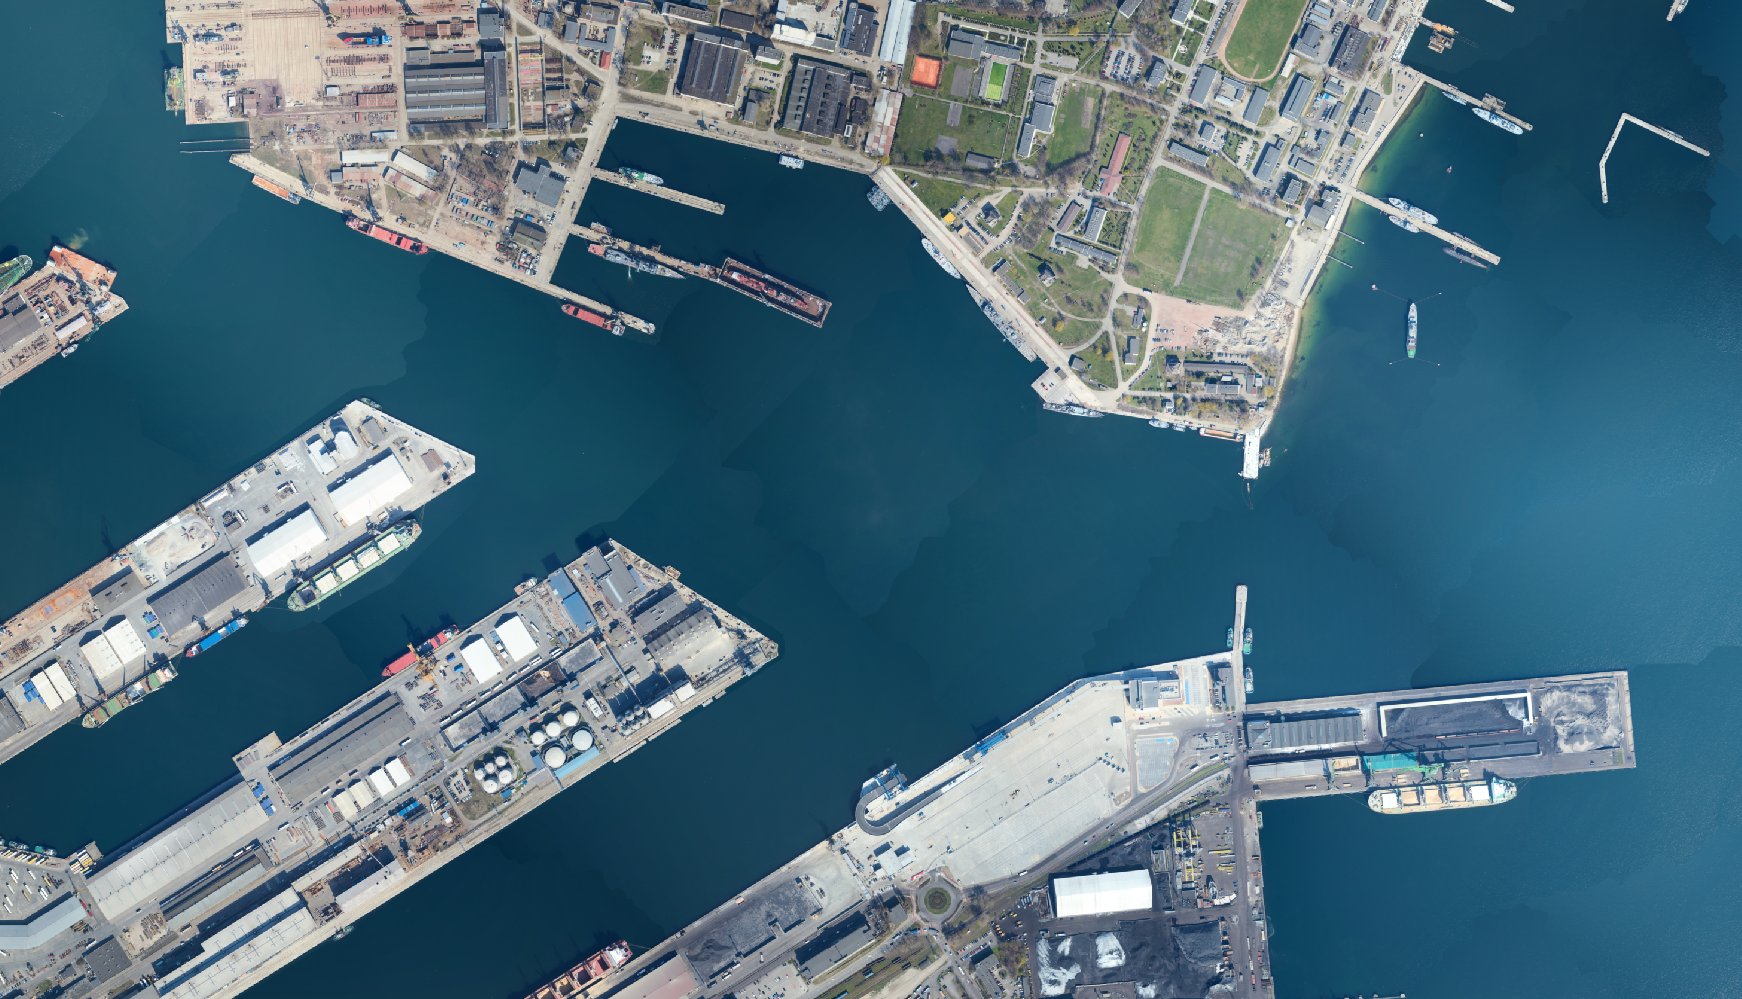 Druga wersja projektu planu zagospodarowania przestrzennego akwenów portu morskiego w Gdyni